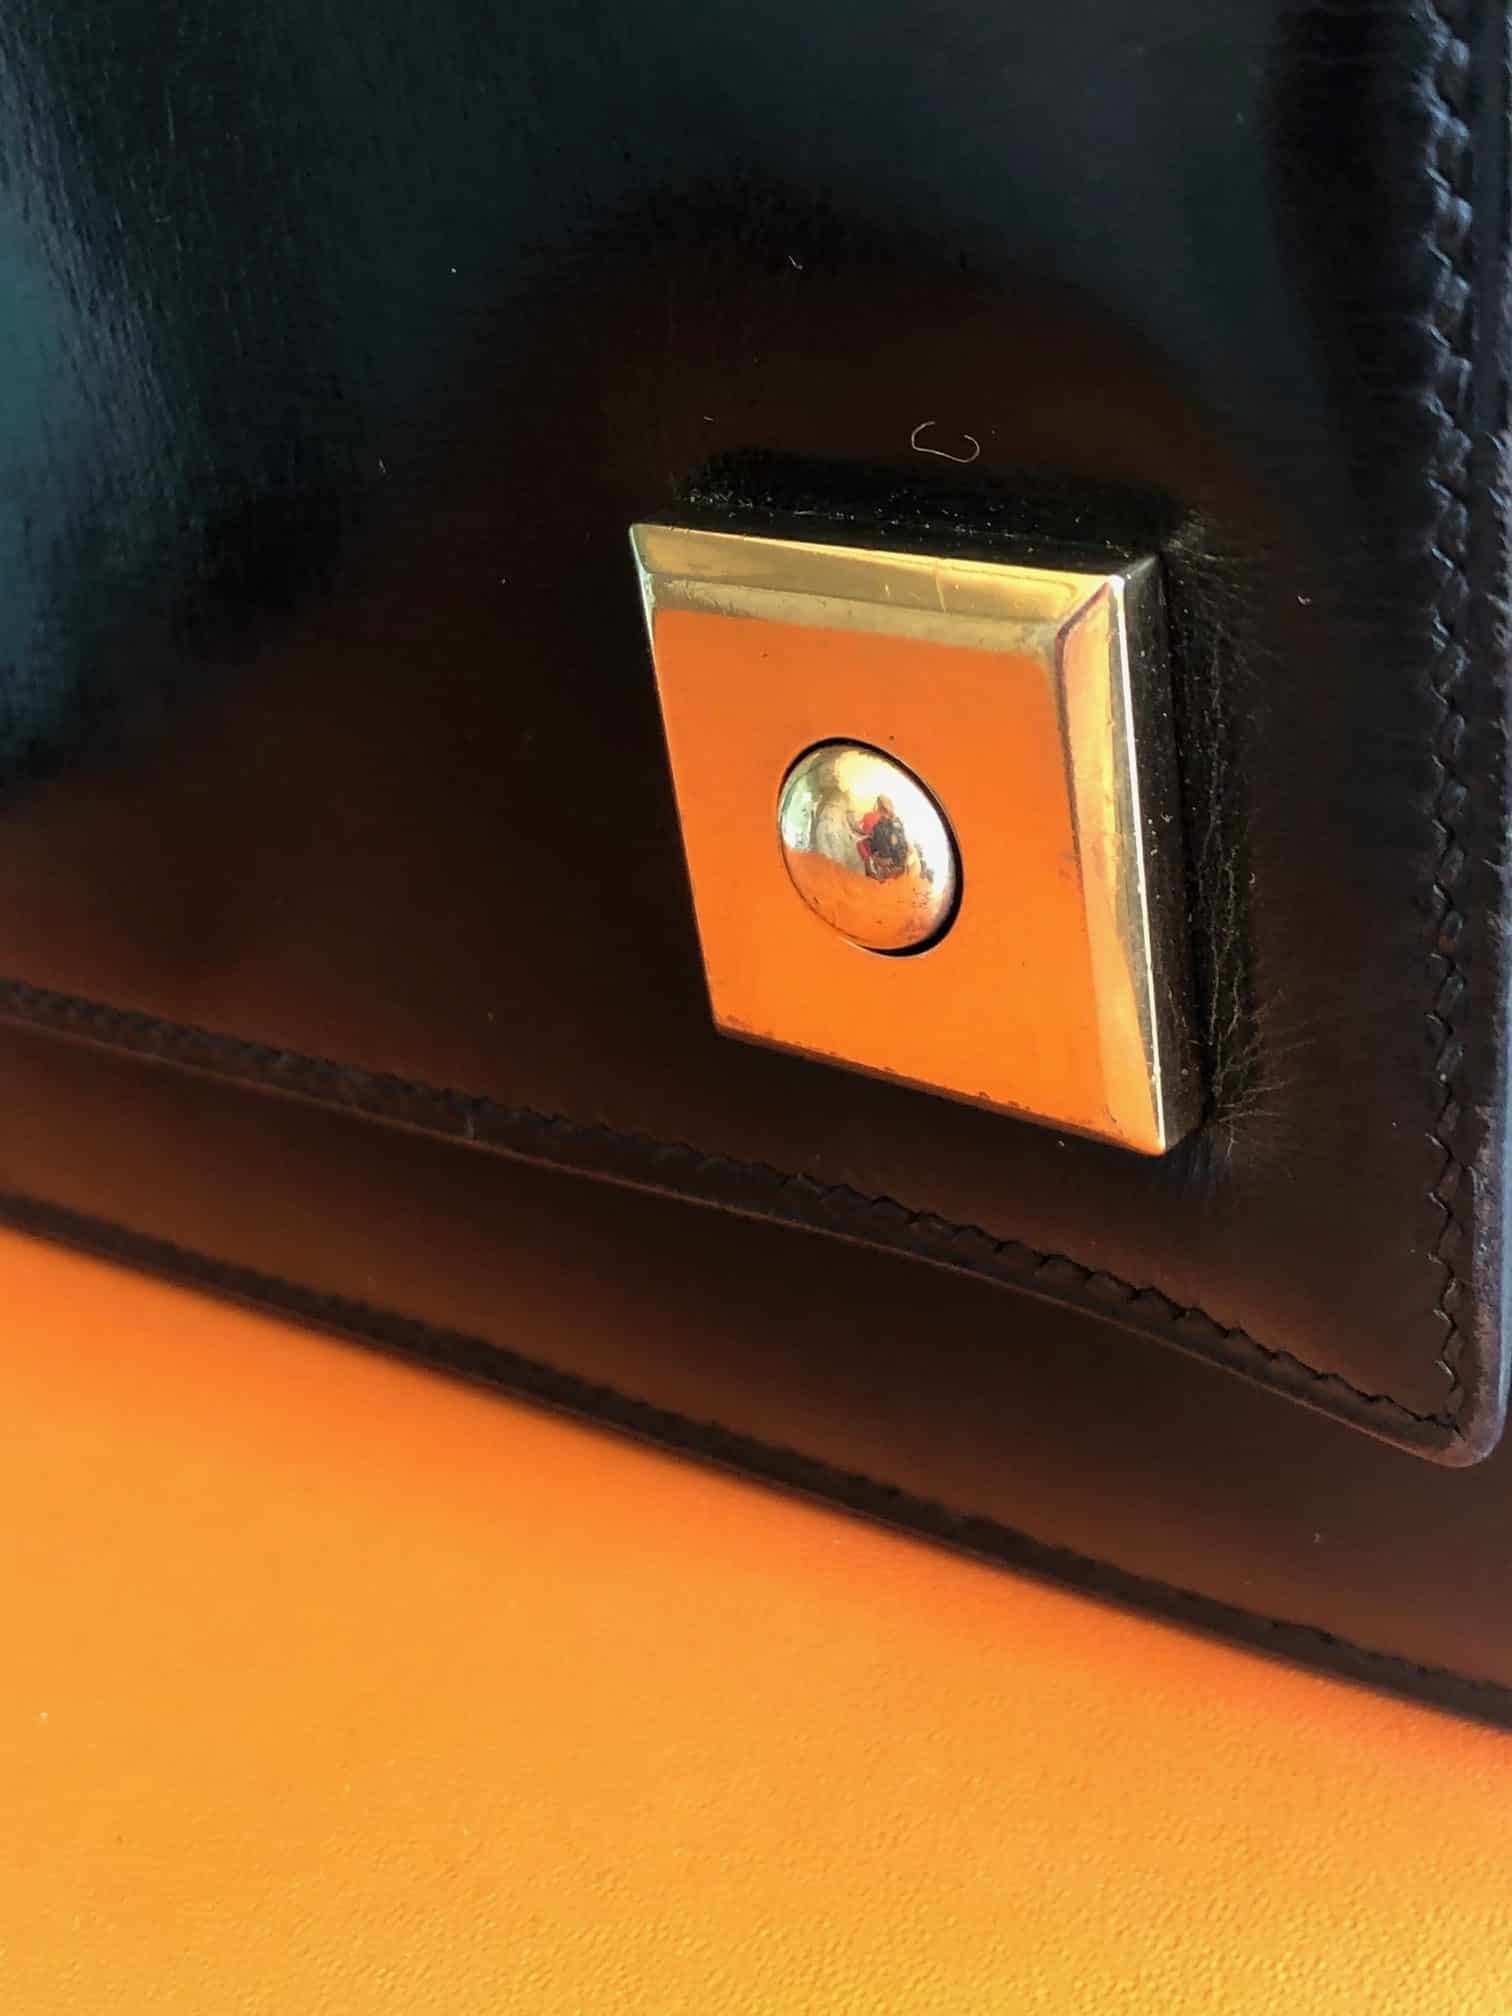 Chanel Label Handbag - 33 For Sale on 1stDibs